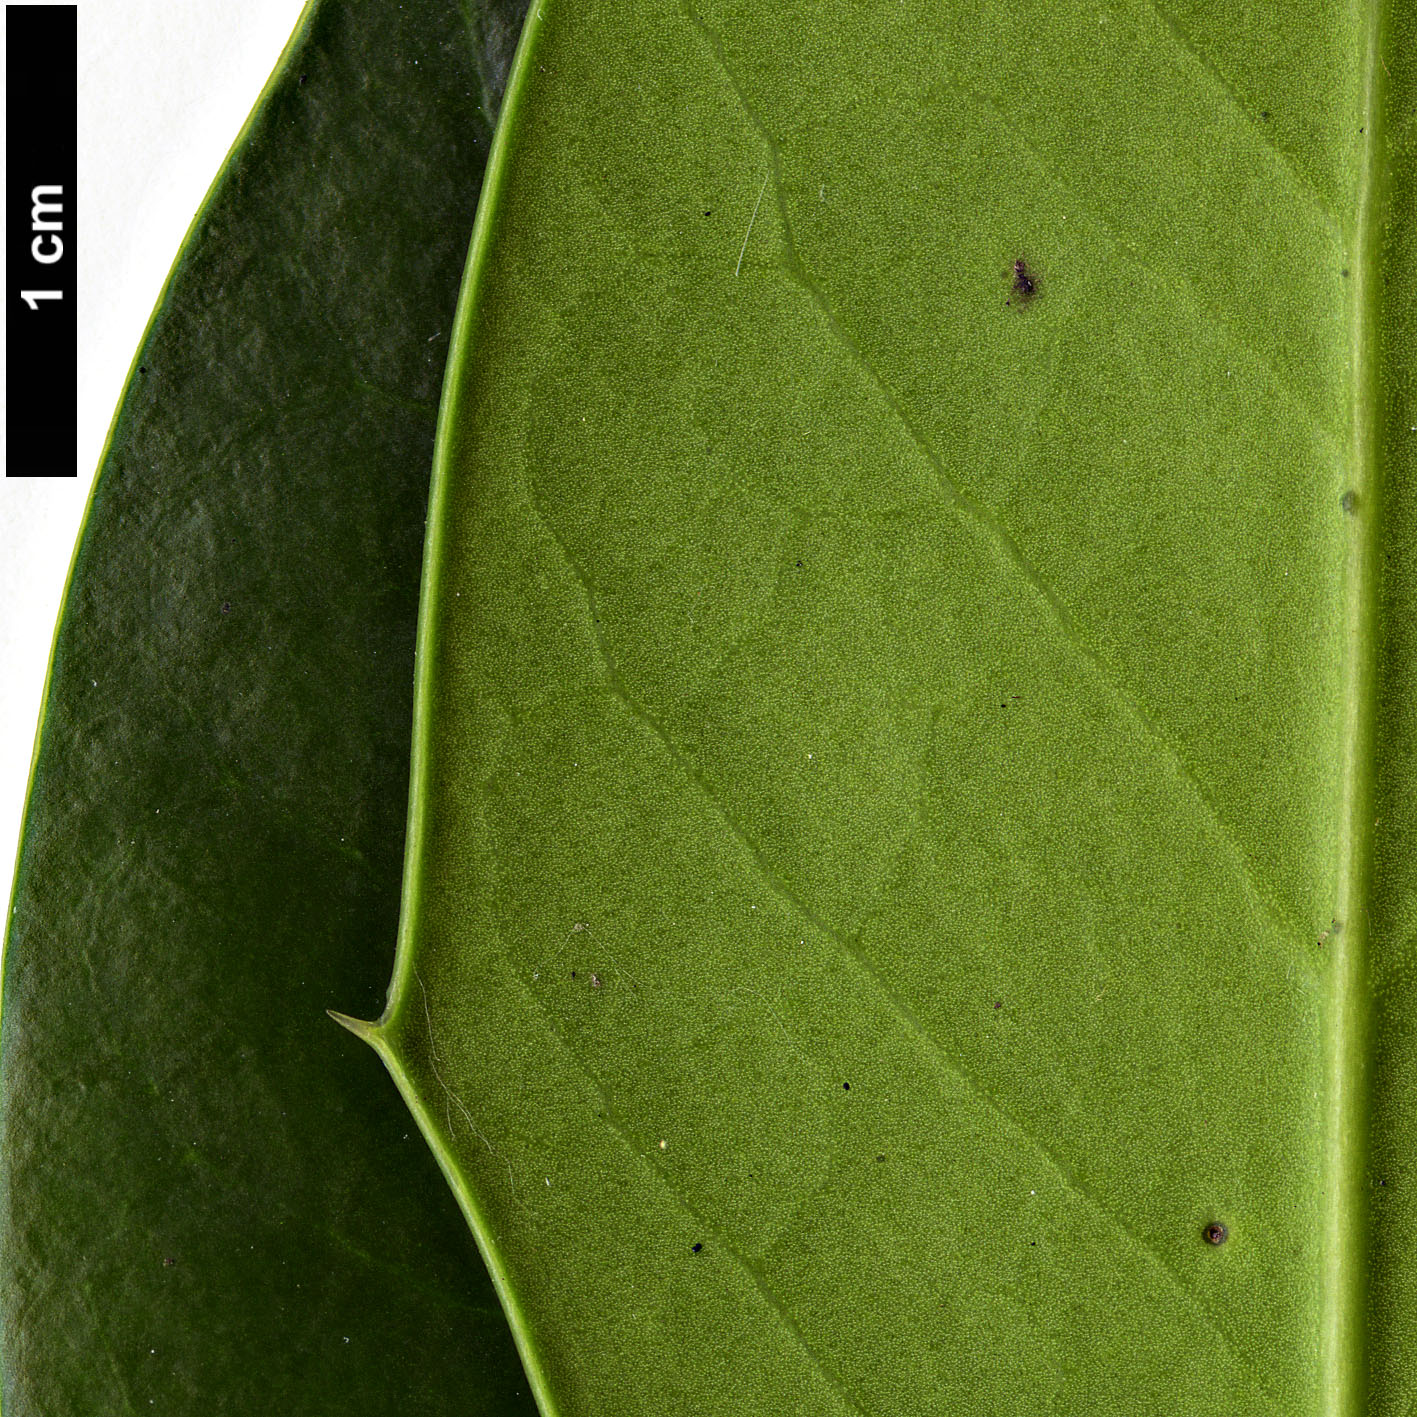 High resolution image: Family: Aquifoliaceae - Genus: Ilex - Taxon: aquifolium - SpeciesSub: × I.opaca